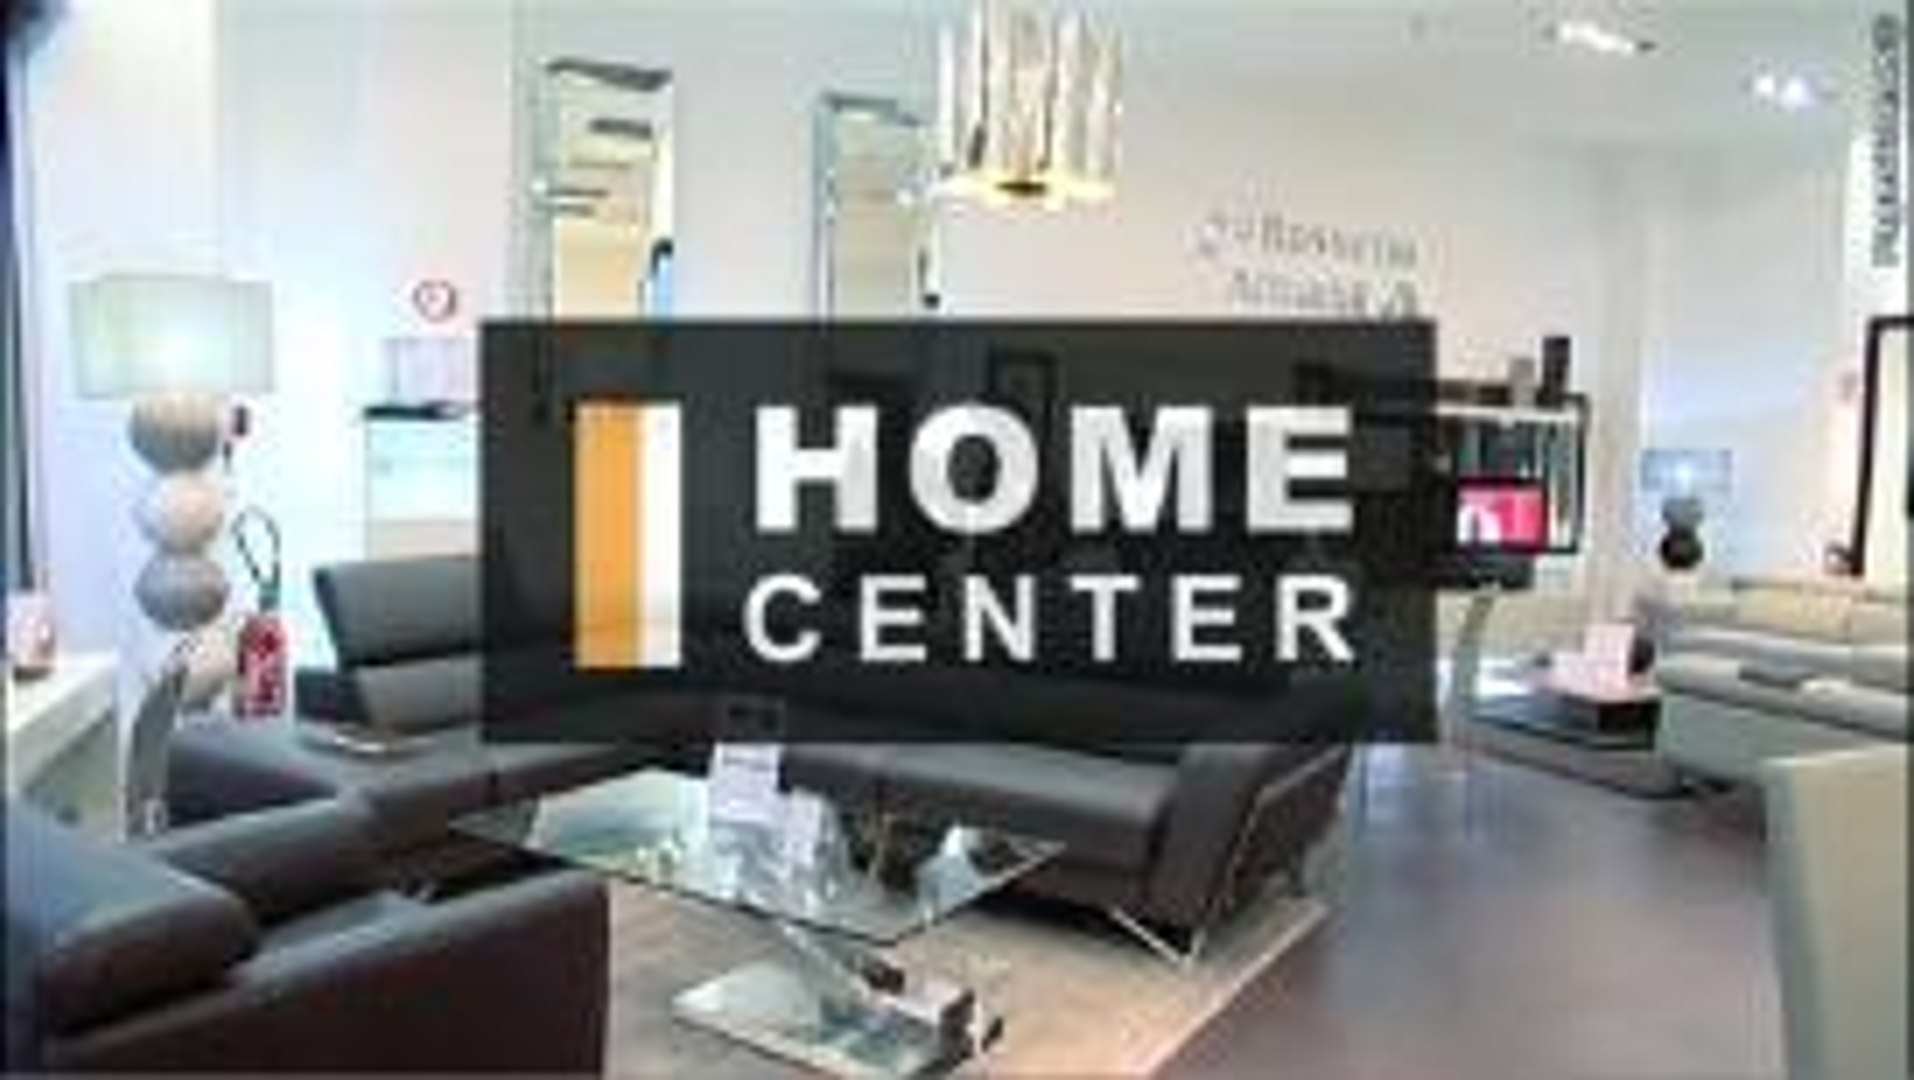 Home Center - Magasin de meubles à Rosny sous Bois - Vidéo Dailymotion